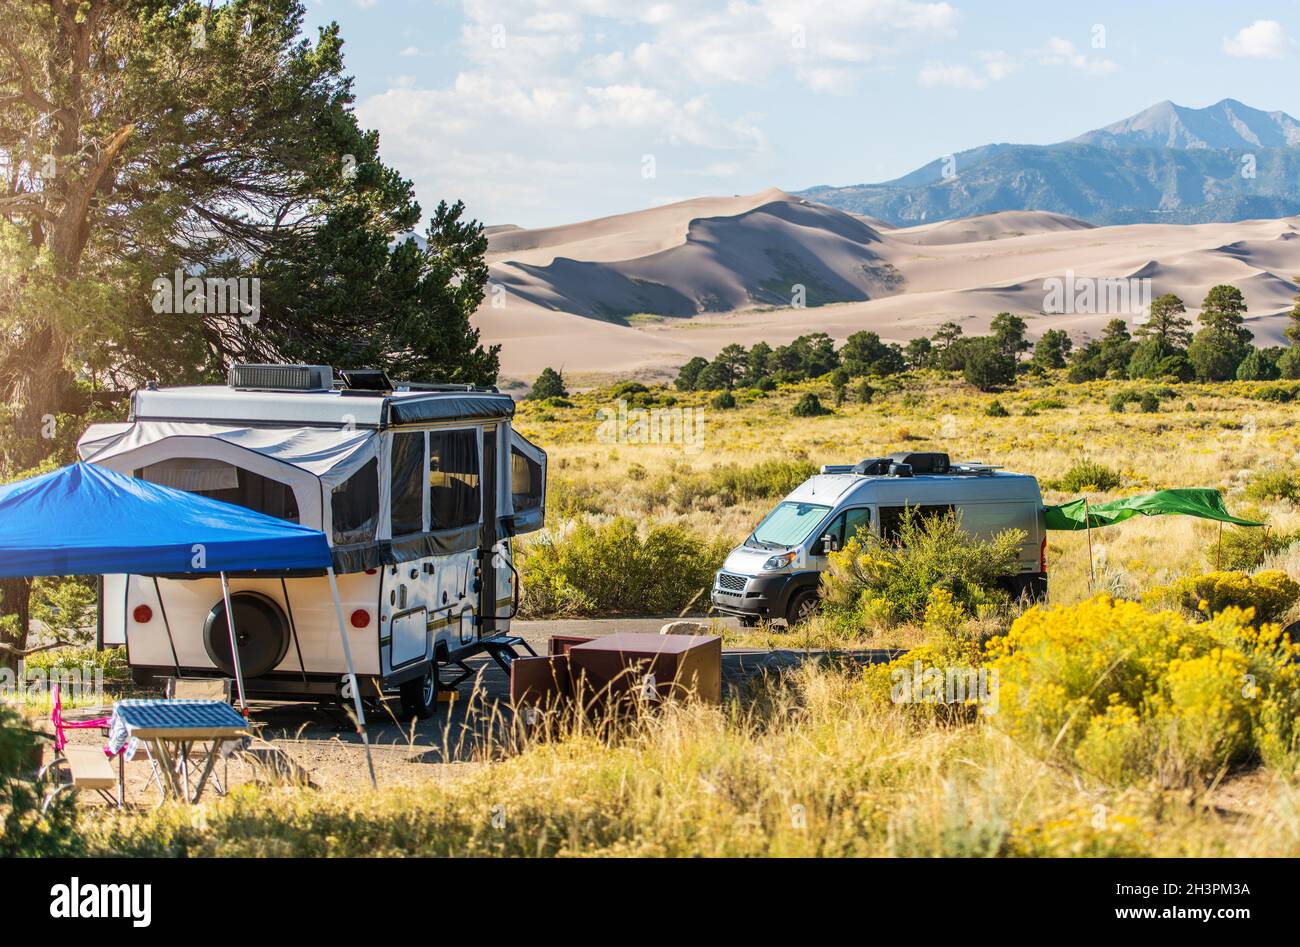 Voyages dans les parcs nationaux américains.Camping camping-car à Colorado Great Sand Dunes, États-Unis d'Amérique. Banque D'Images